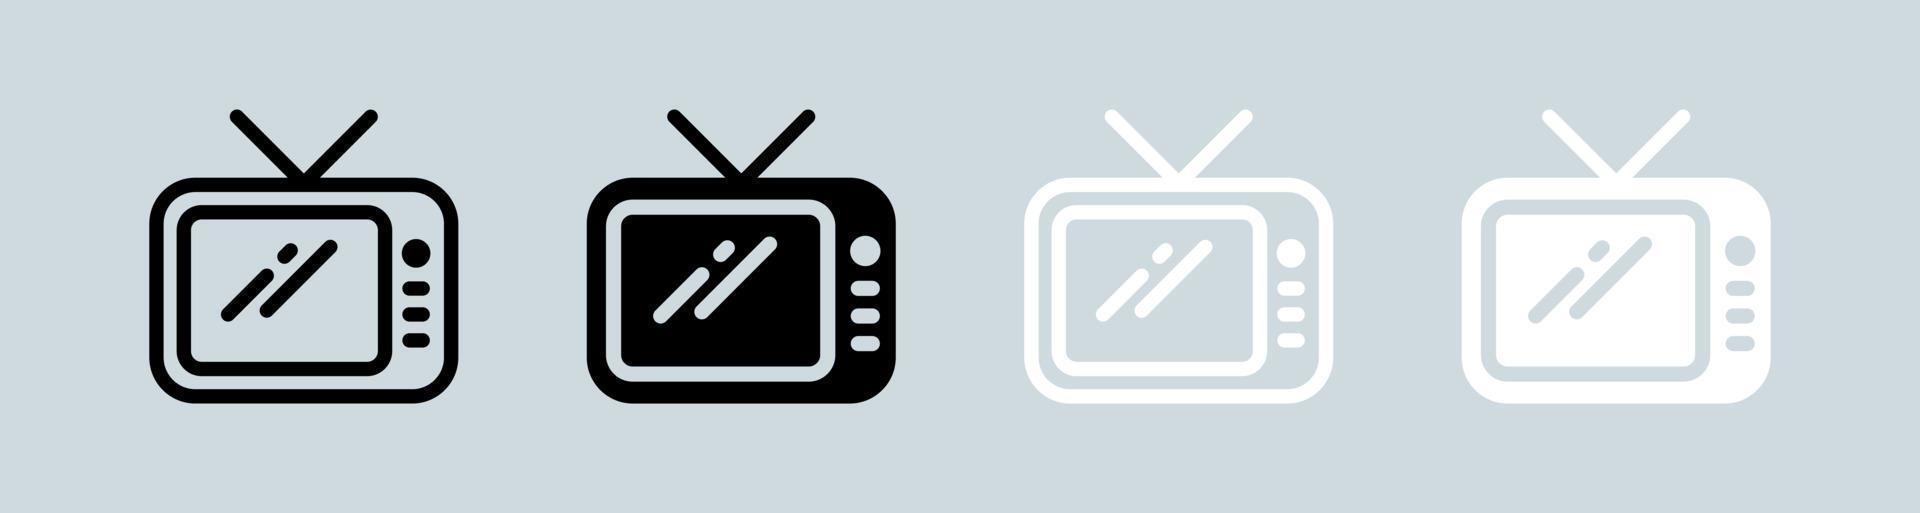 icône de télévision en noir et blanc. illustration vectorielle de signes de télévision rétro. vecteur